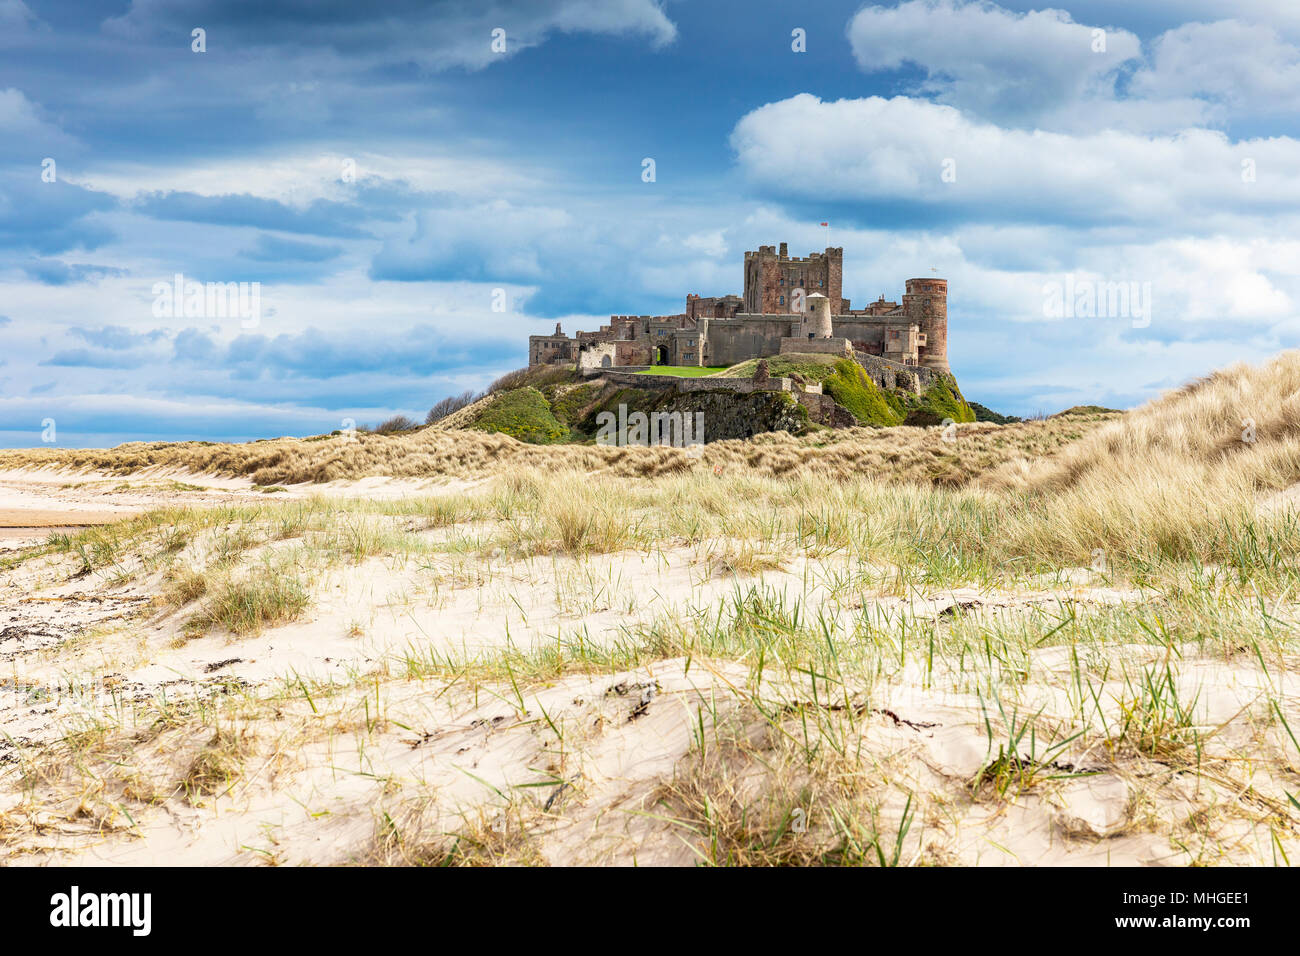 Bamburgh Castle from the sand dunes, Northumberland, England, UK Stock Photo